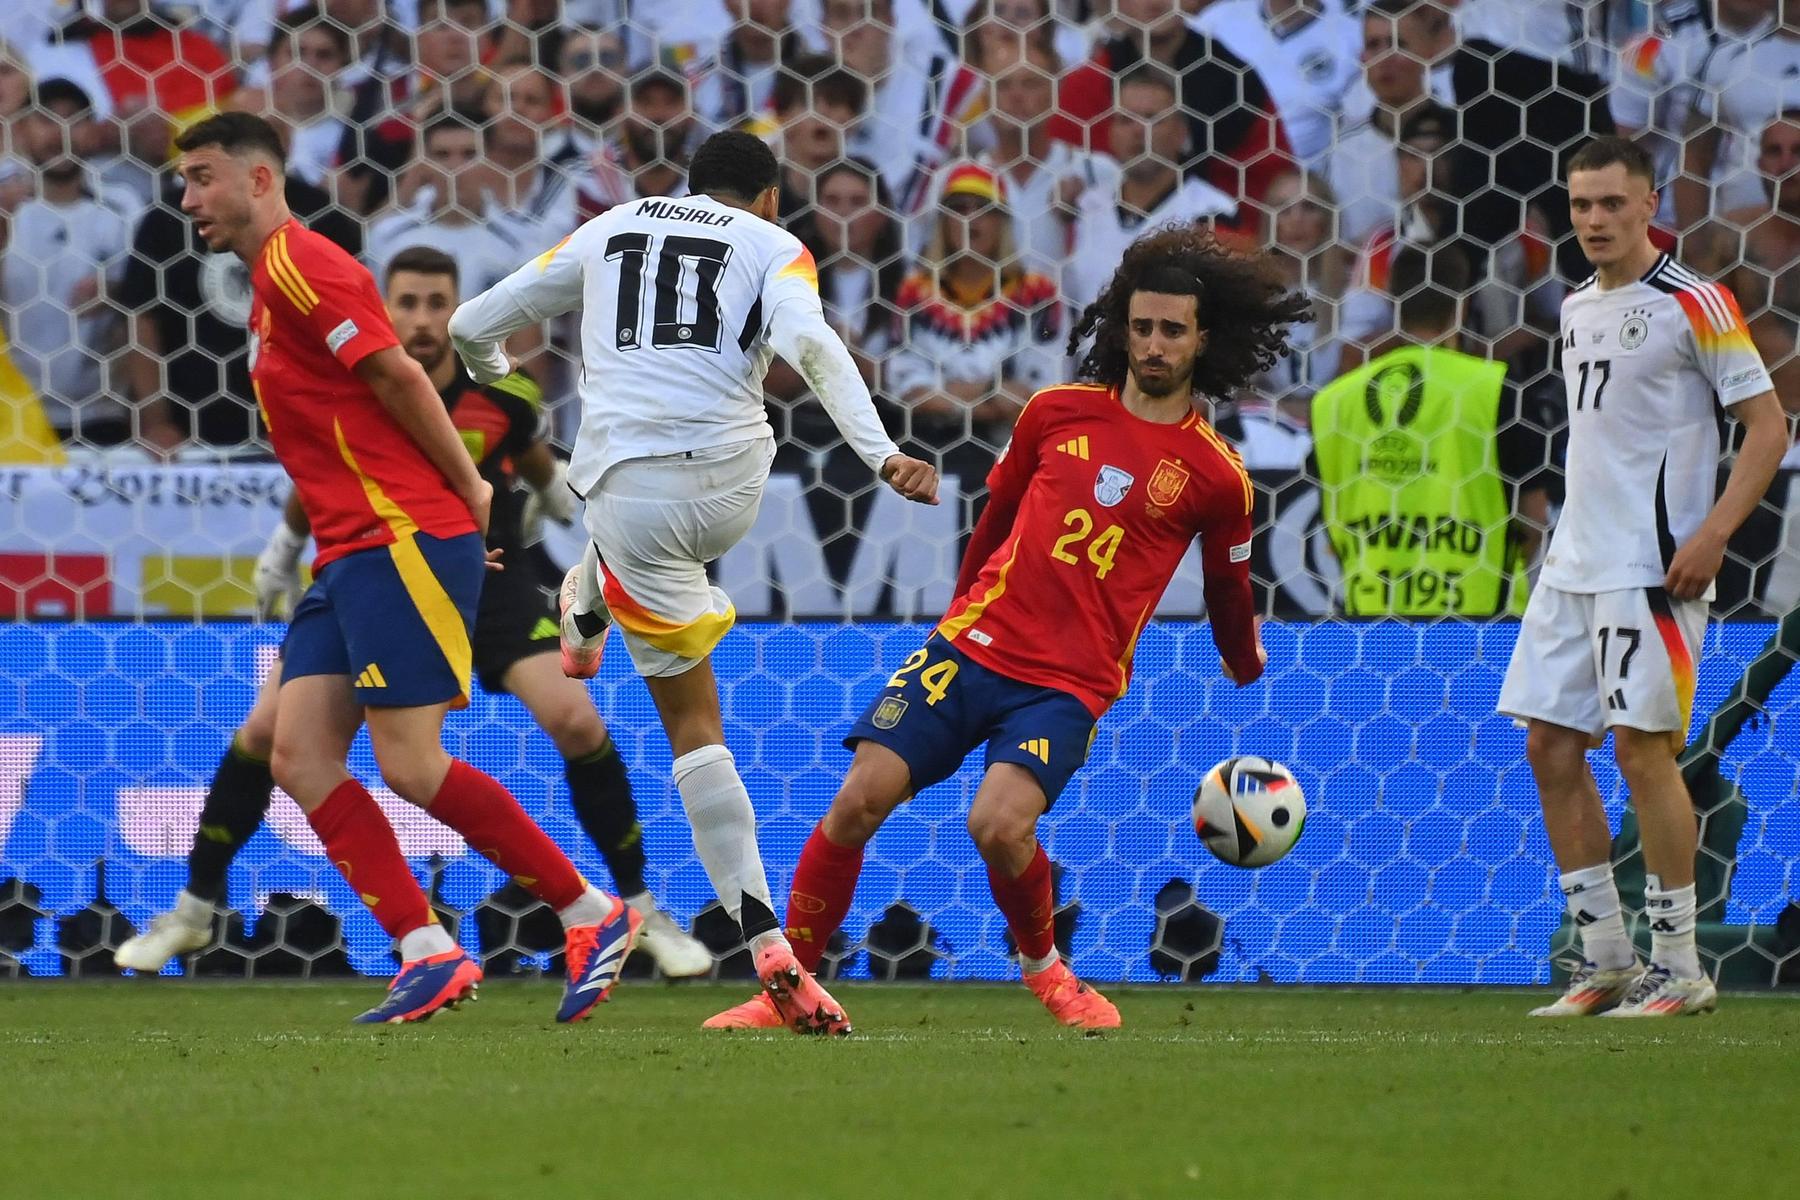 Nach Aus gegen Spanien: Für Thomas Müller ist die Handregel „ein verzwicktes Luder“